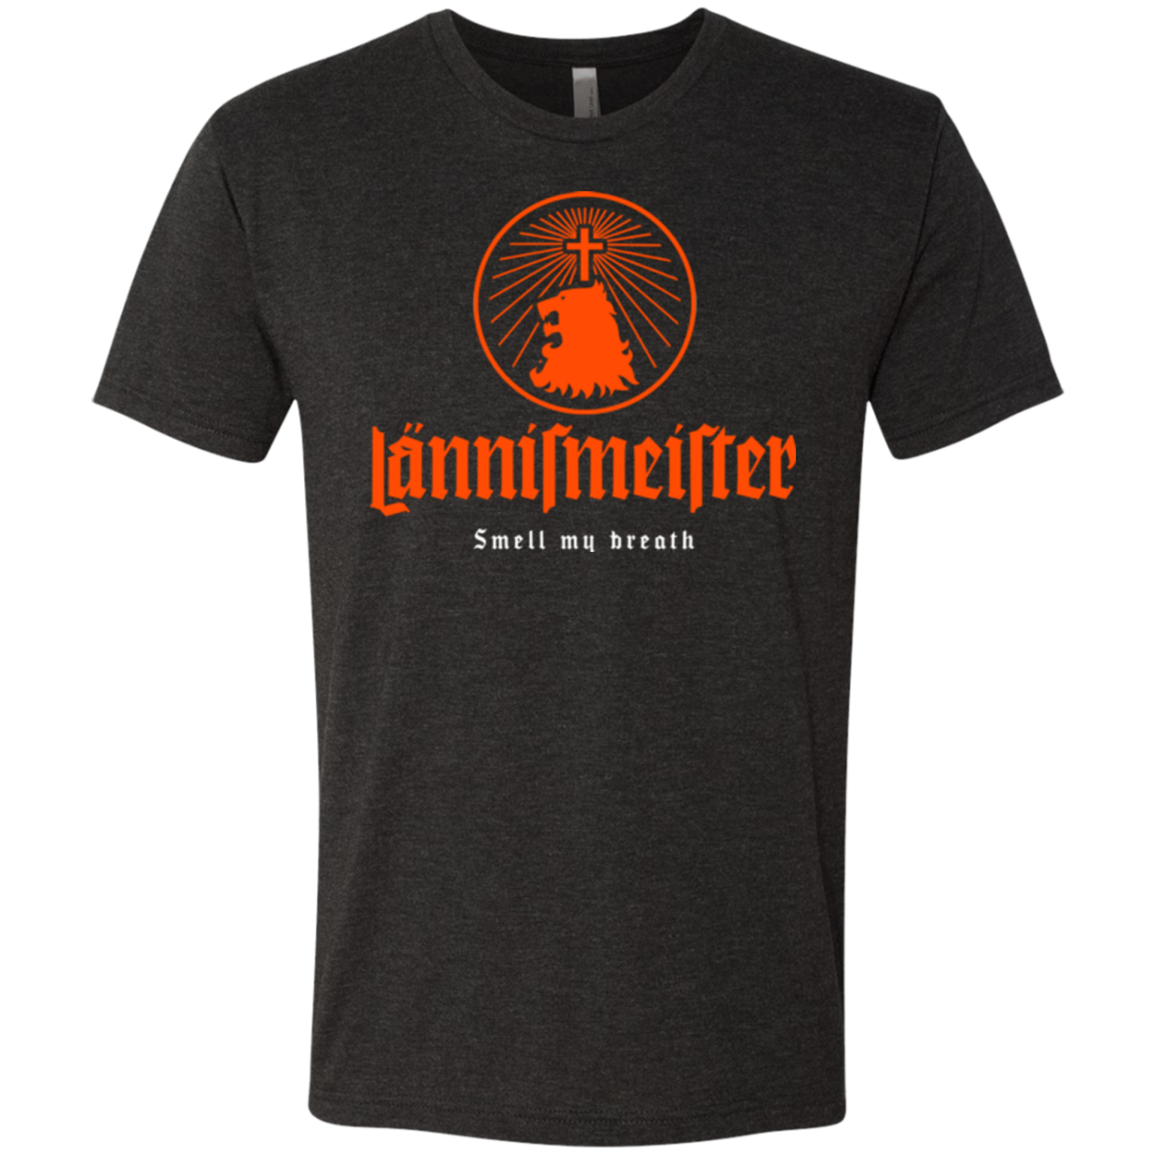 Lannismeister Men's Triblend T-Shirt